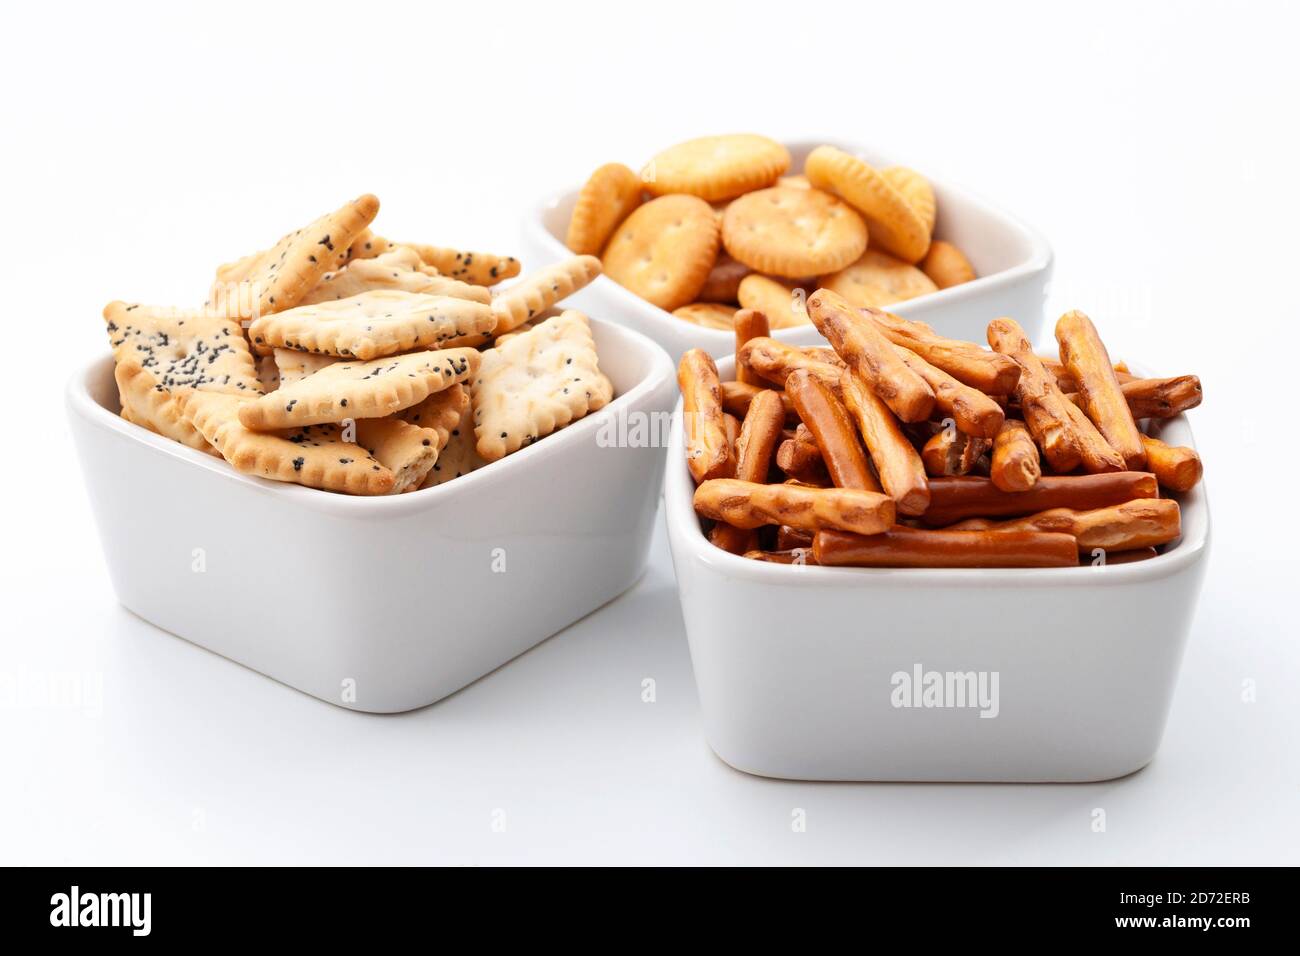 Selección de pretzels, palitos, galletas saladas y bocadillos salados en cuencos blancos de cerámica aislados sobre fondo blanco Foto de stock